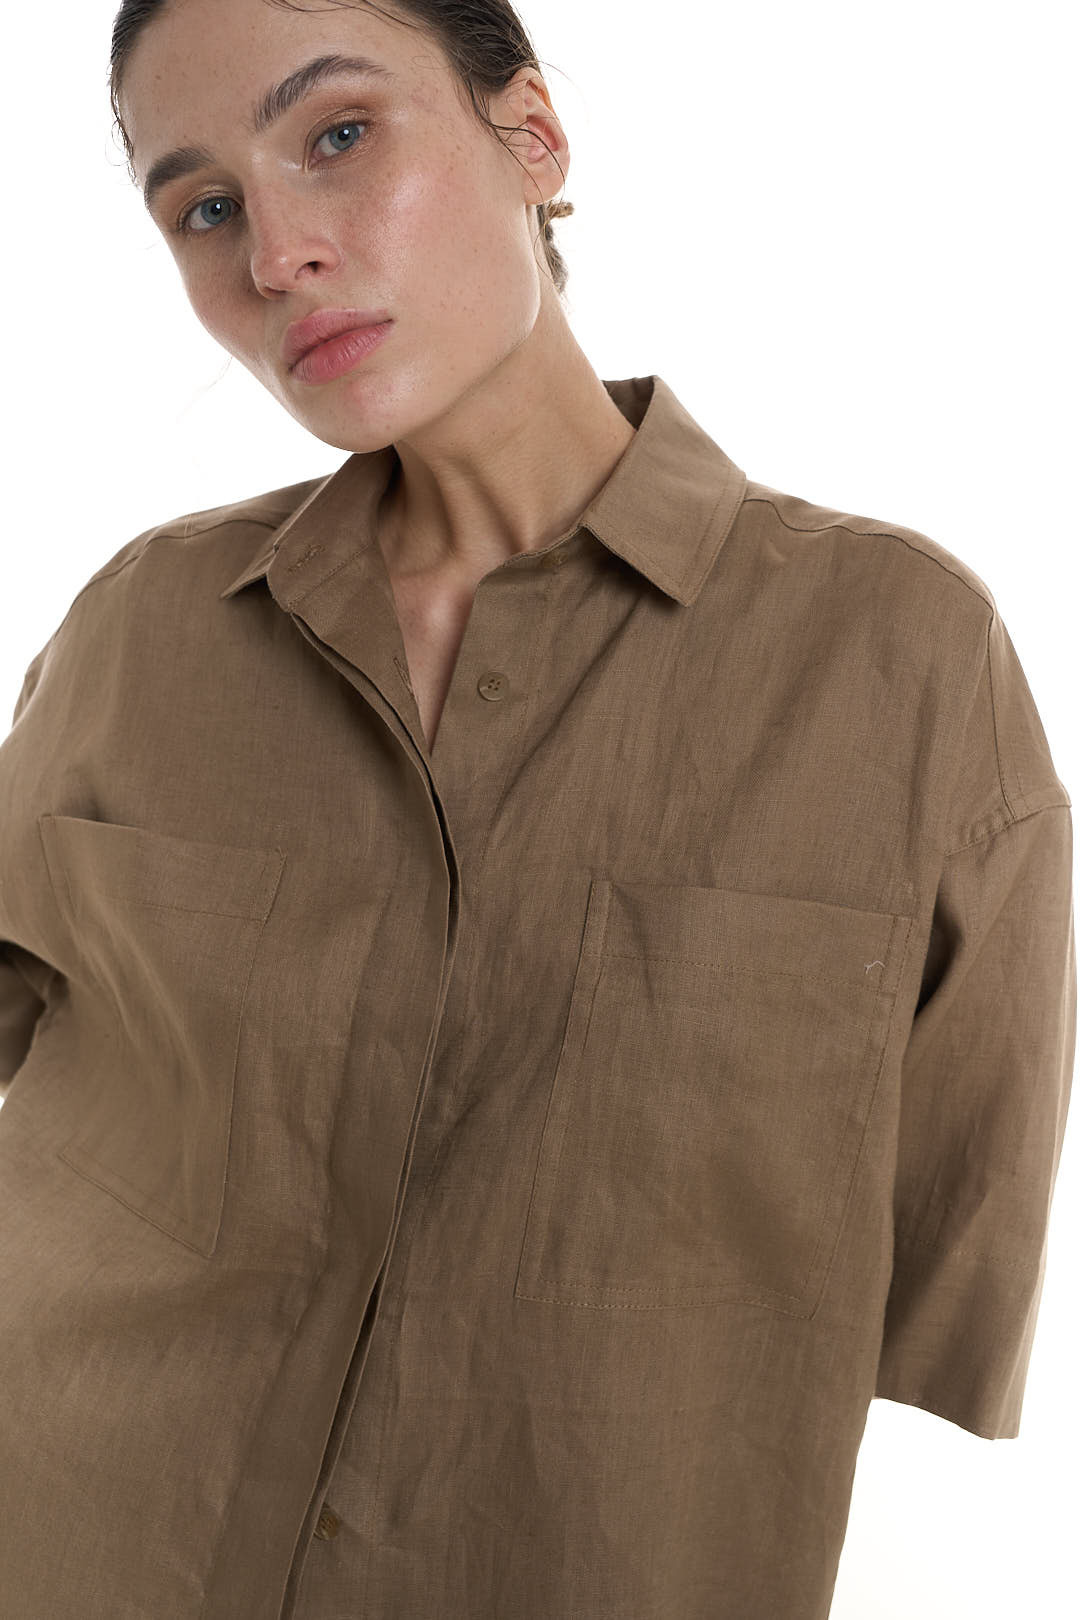 Рубашка с коротким рукавом женская изо льна, корица